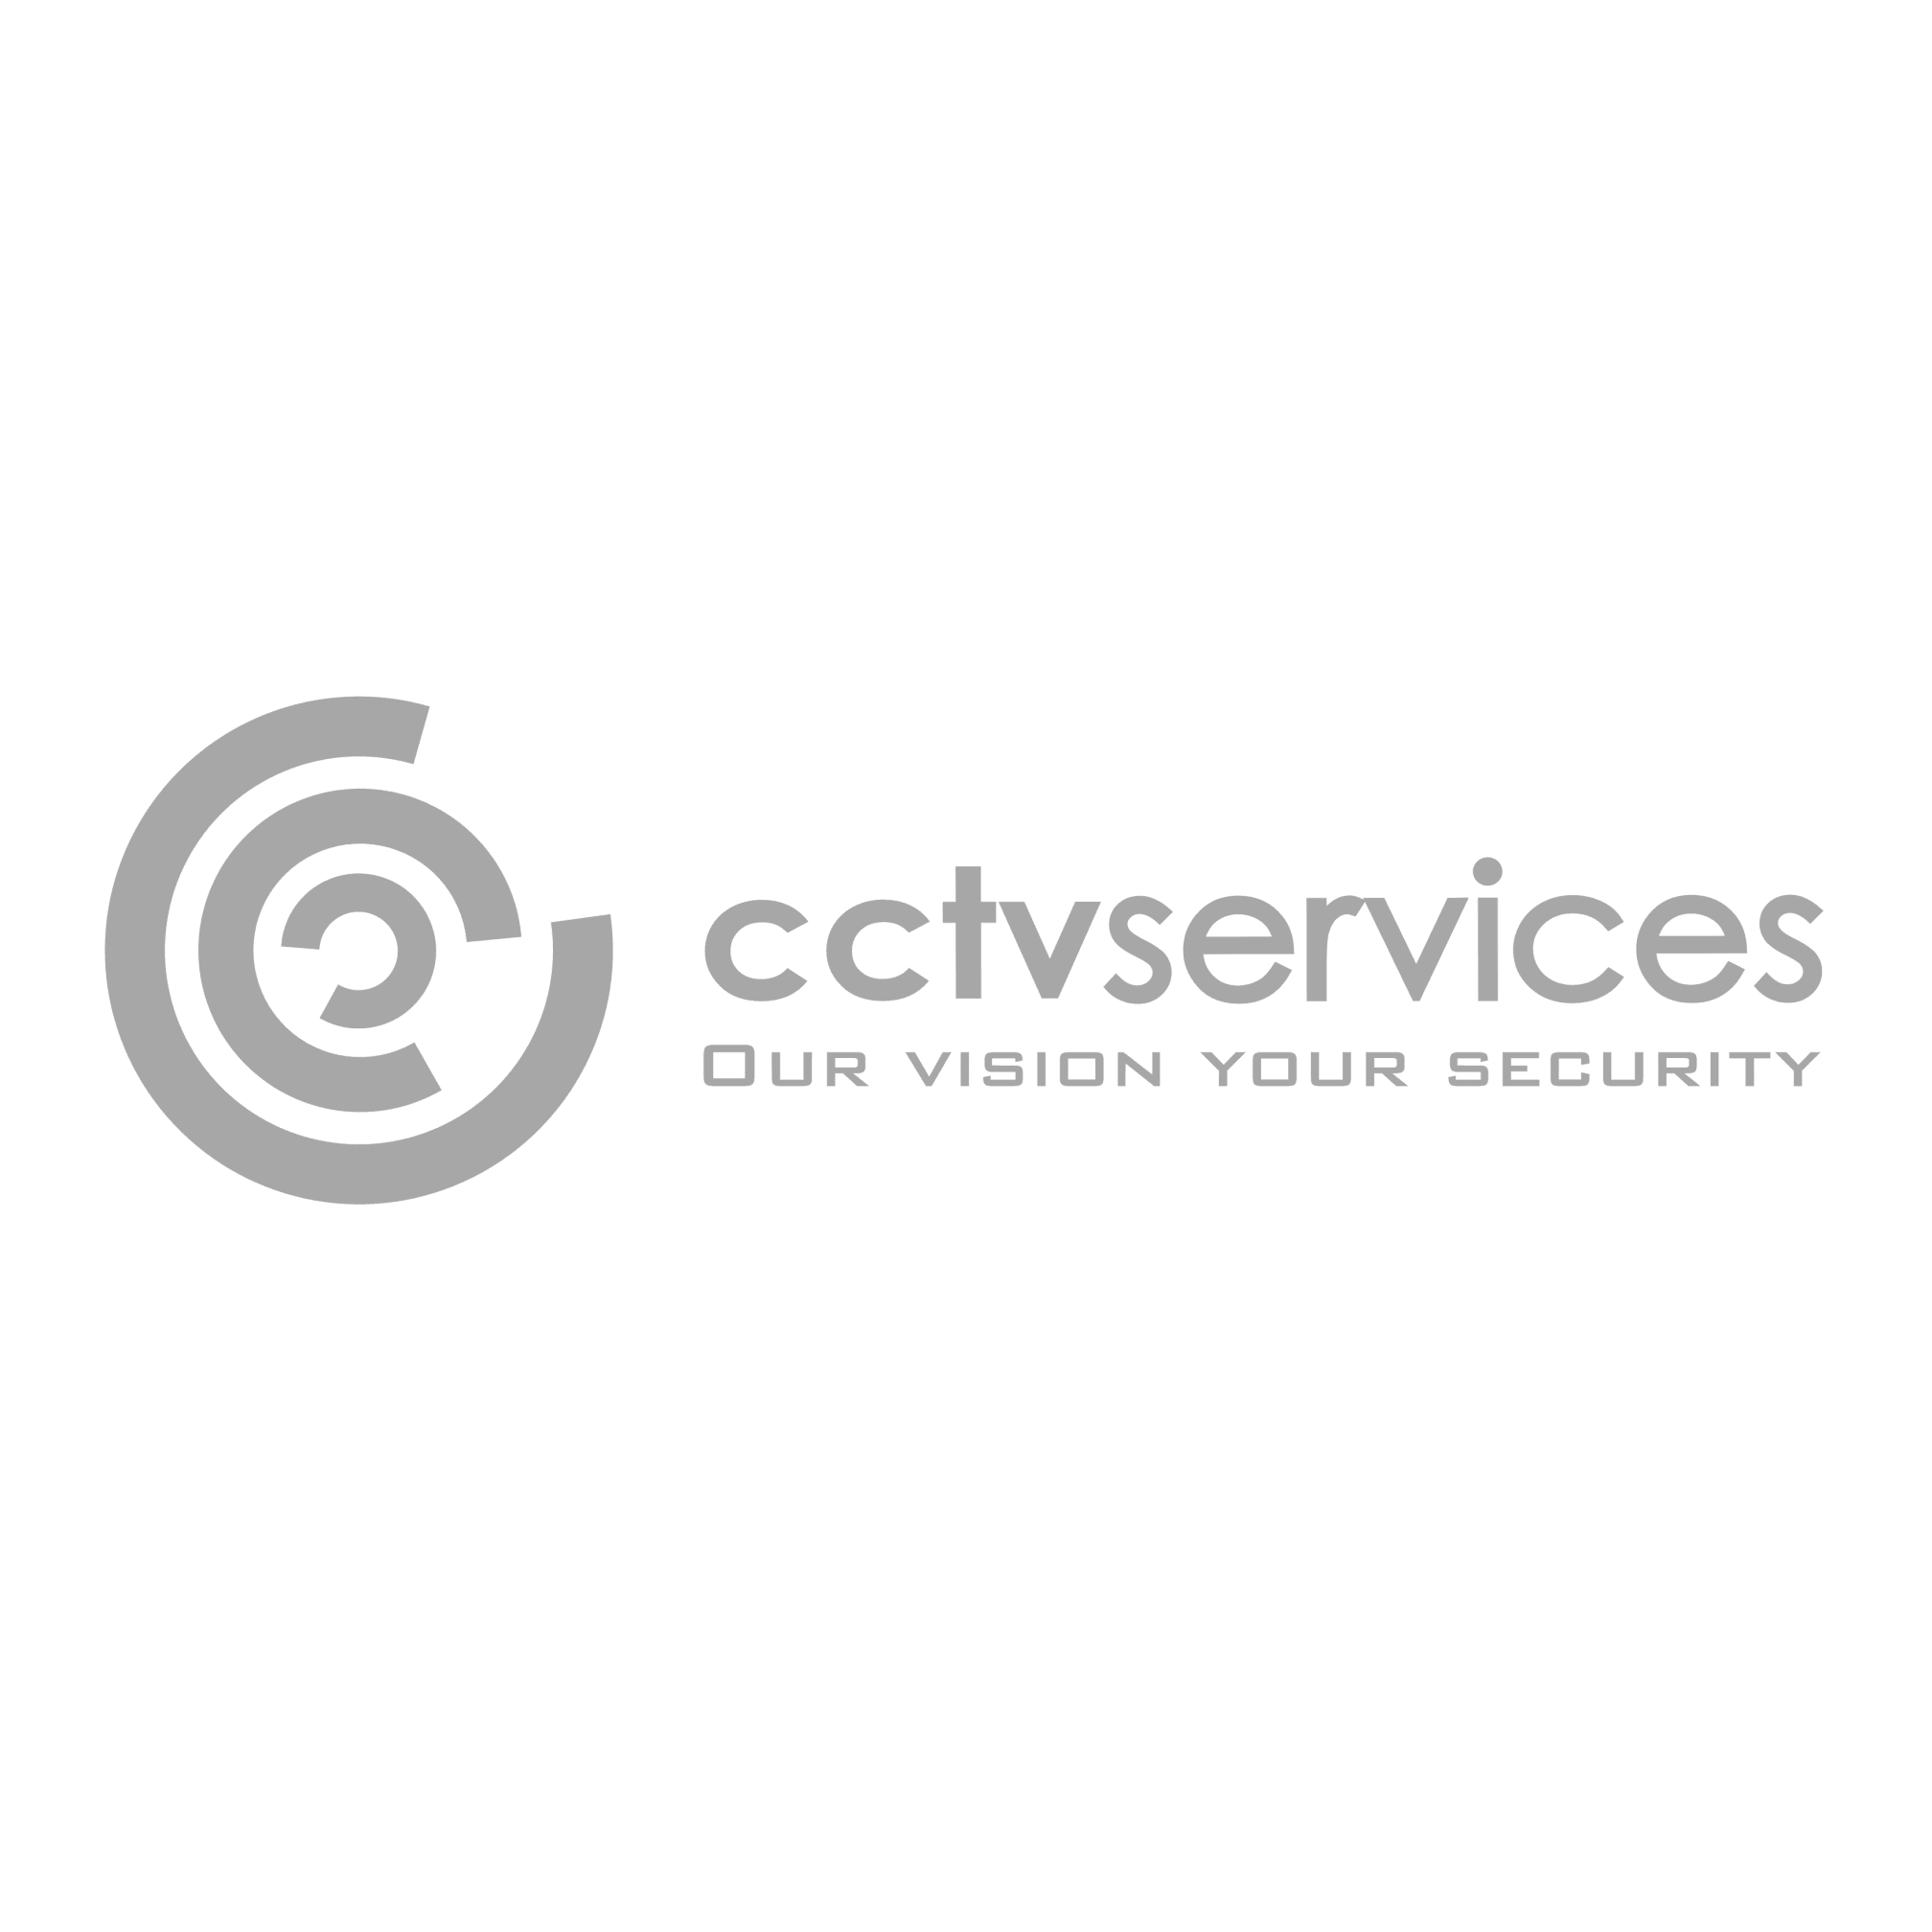 CCTV Services Ltd - Llandudno, Gwynedd LL30 1DR - 08001 577044 | ShowMeLocal.com